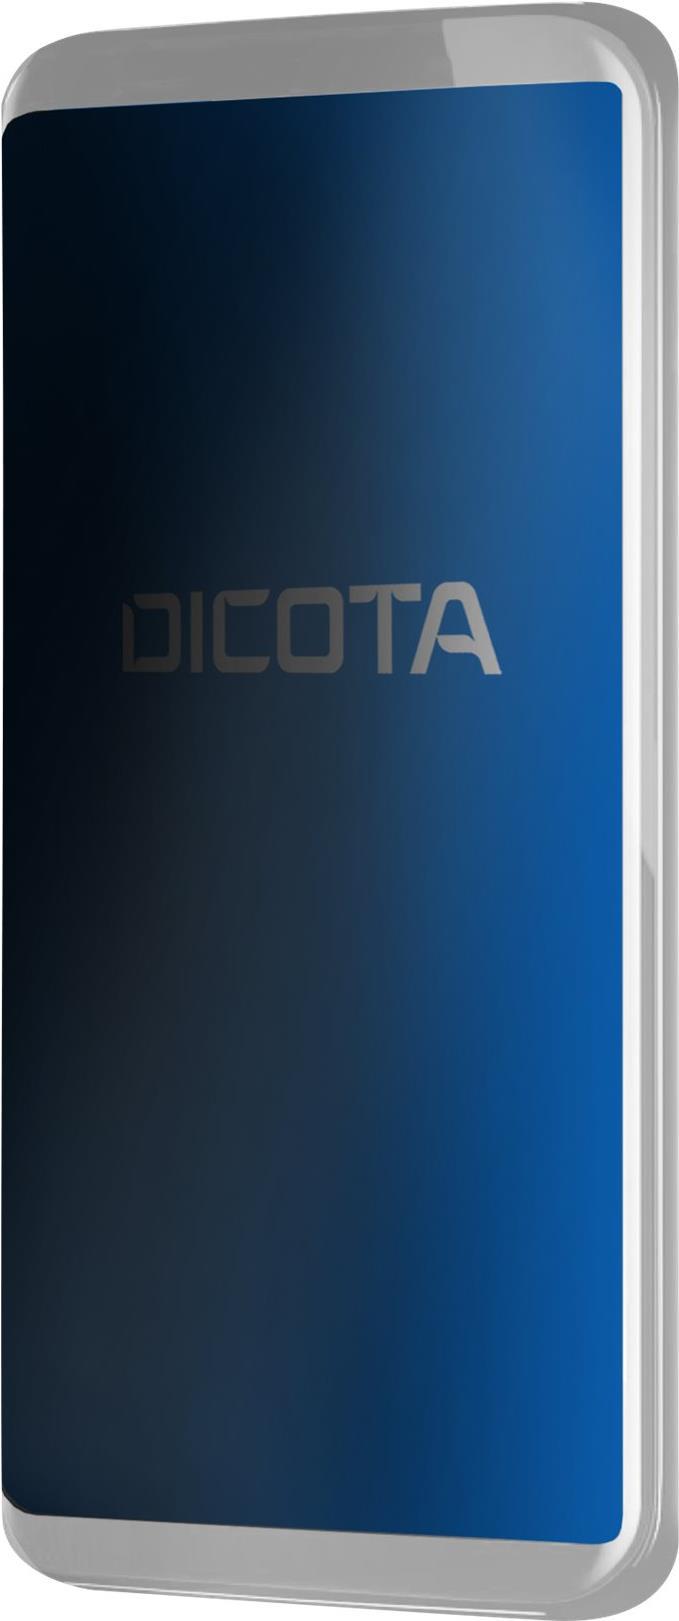 DICOTA - Bildschirmschutz für Handy - Folie - mit Sichtschutzfilter - 4-Wege - Schwarz - für Apple iPhone 13 Pro Max